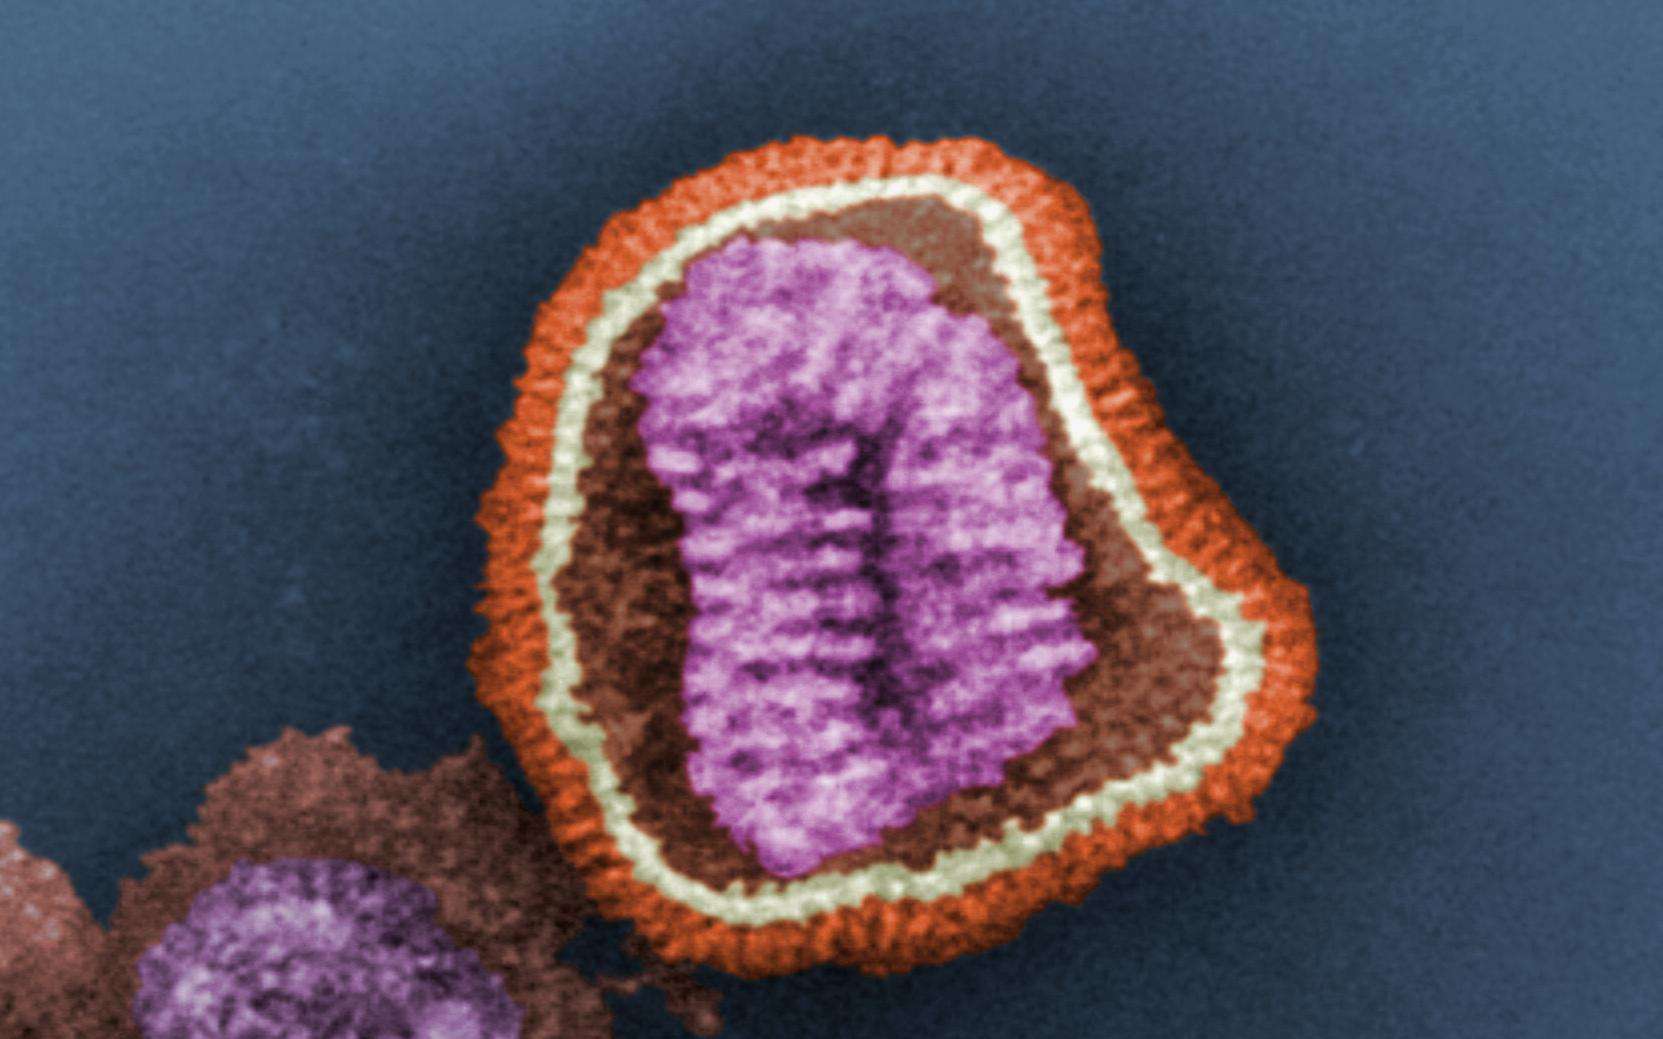 Toutes les formes de grippe sont dues à un virus comme celui-ci, vu en microscopie électronique à balayage. Certains sont plutôt bénins, mais celui à l'origine de la grippe aviaire est l'un des plus mortels. Heureusement qu'il n'y a pour l'heure aucun cas avéré de transmission d'Homme à Homme... © Patricia Goldsmith, CDC, DP